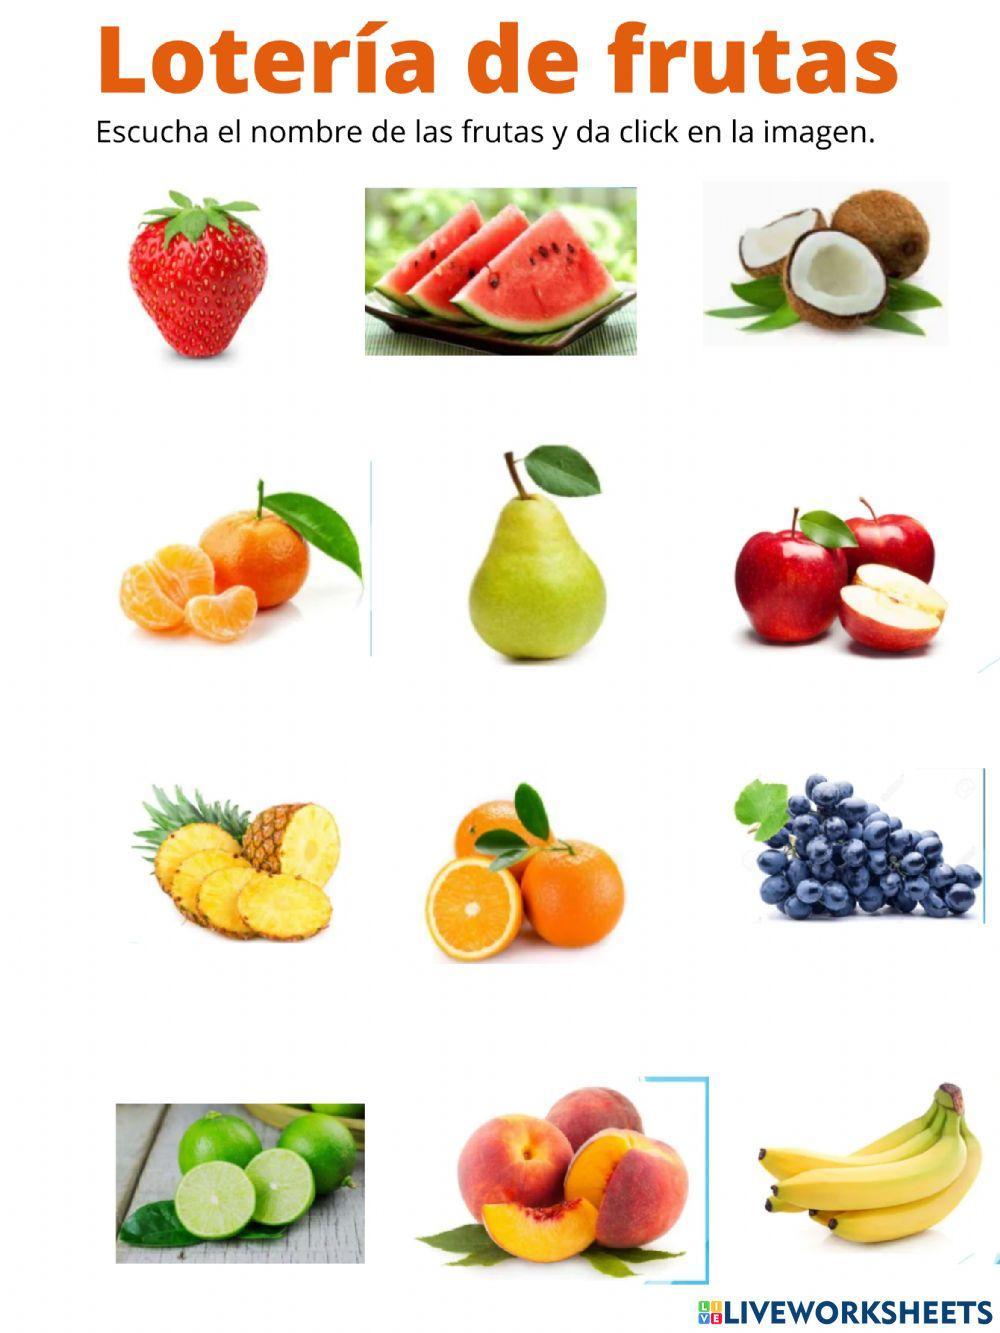 Lotería de frutas